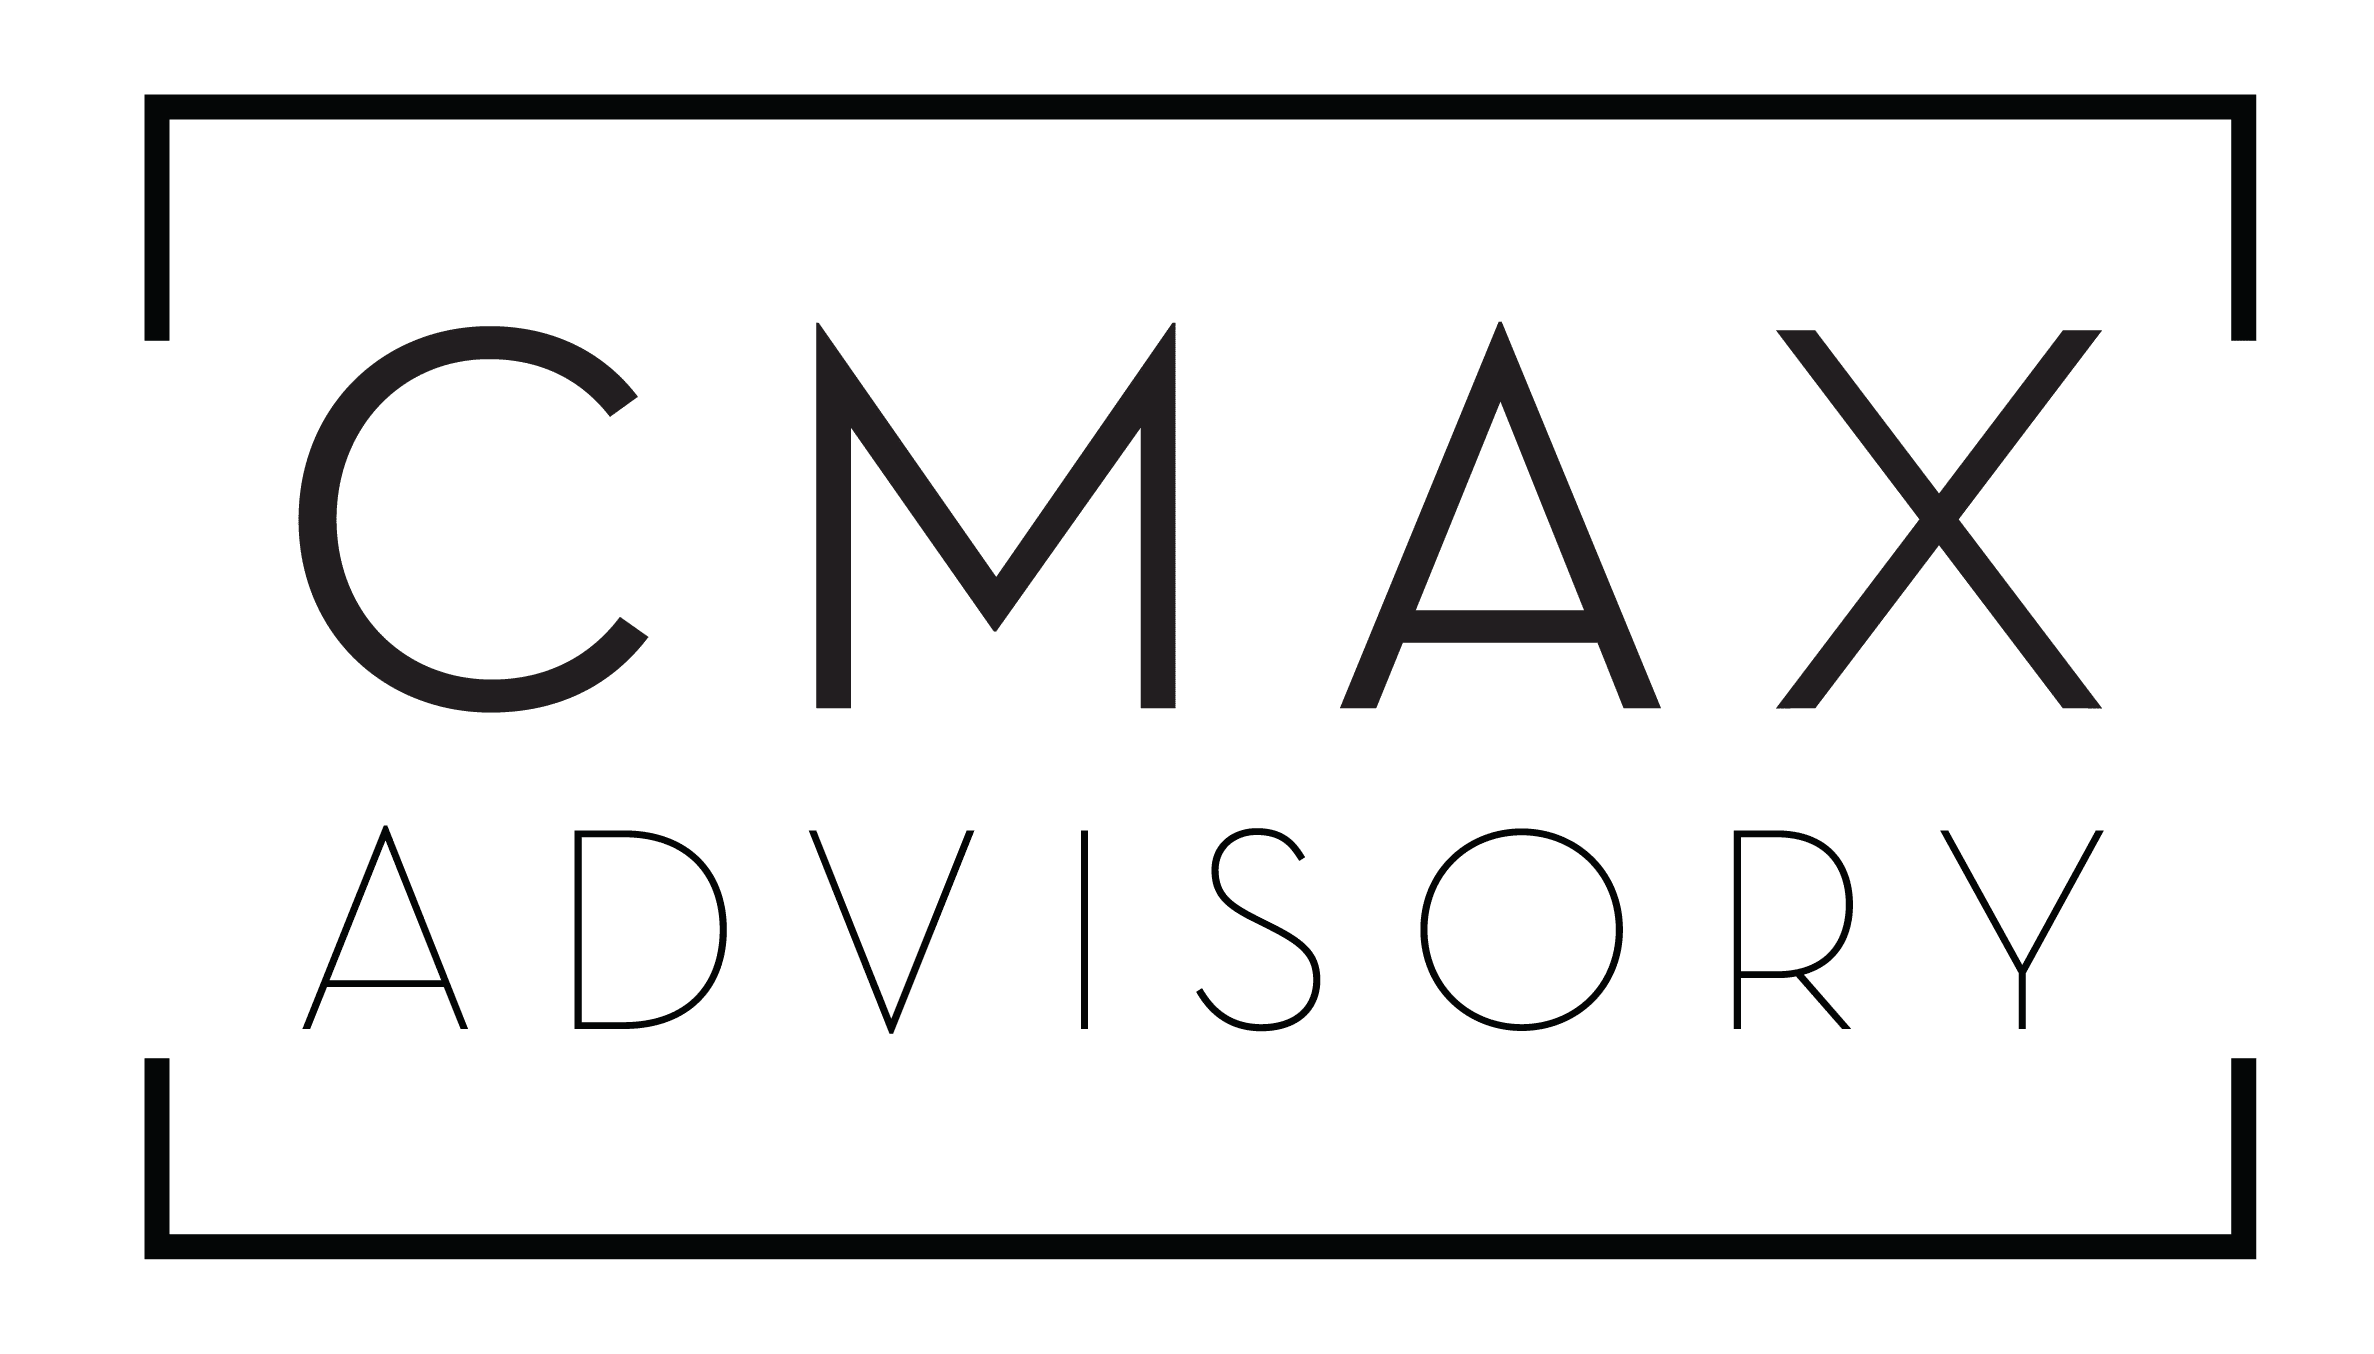 CMAX Advisory